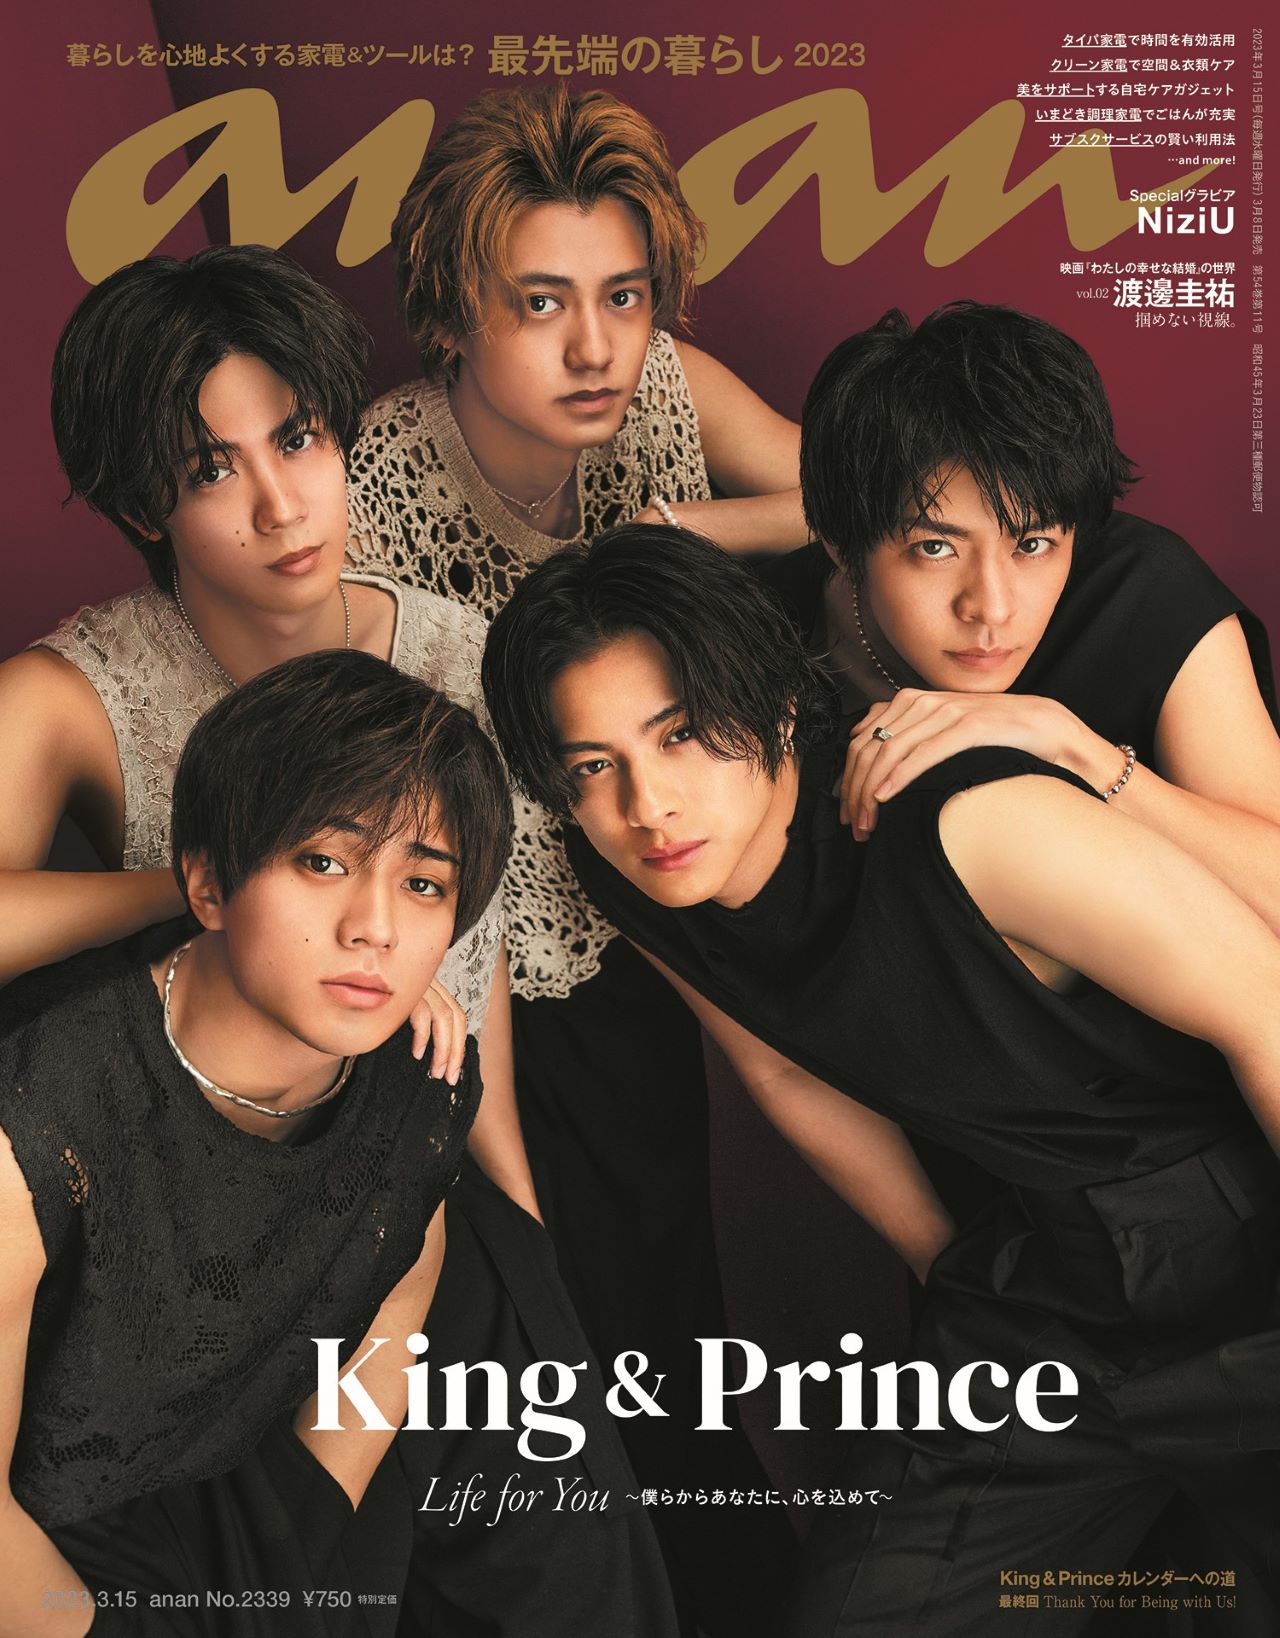 King ＆ Prince、絶対的タイミングで「anan」表紙登場 5人が“1番の笑顔